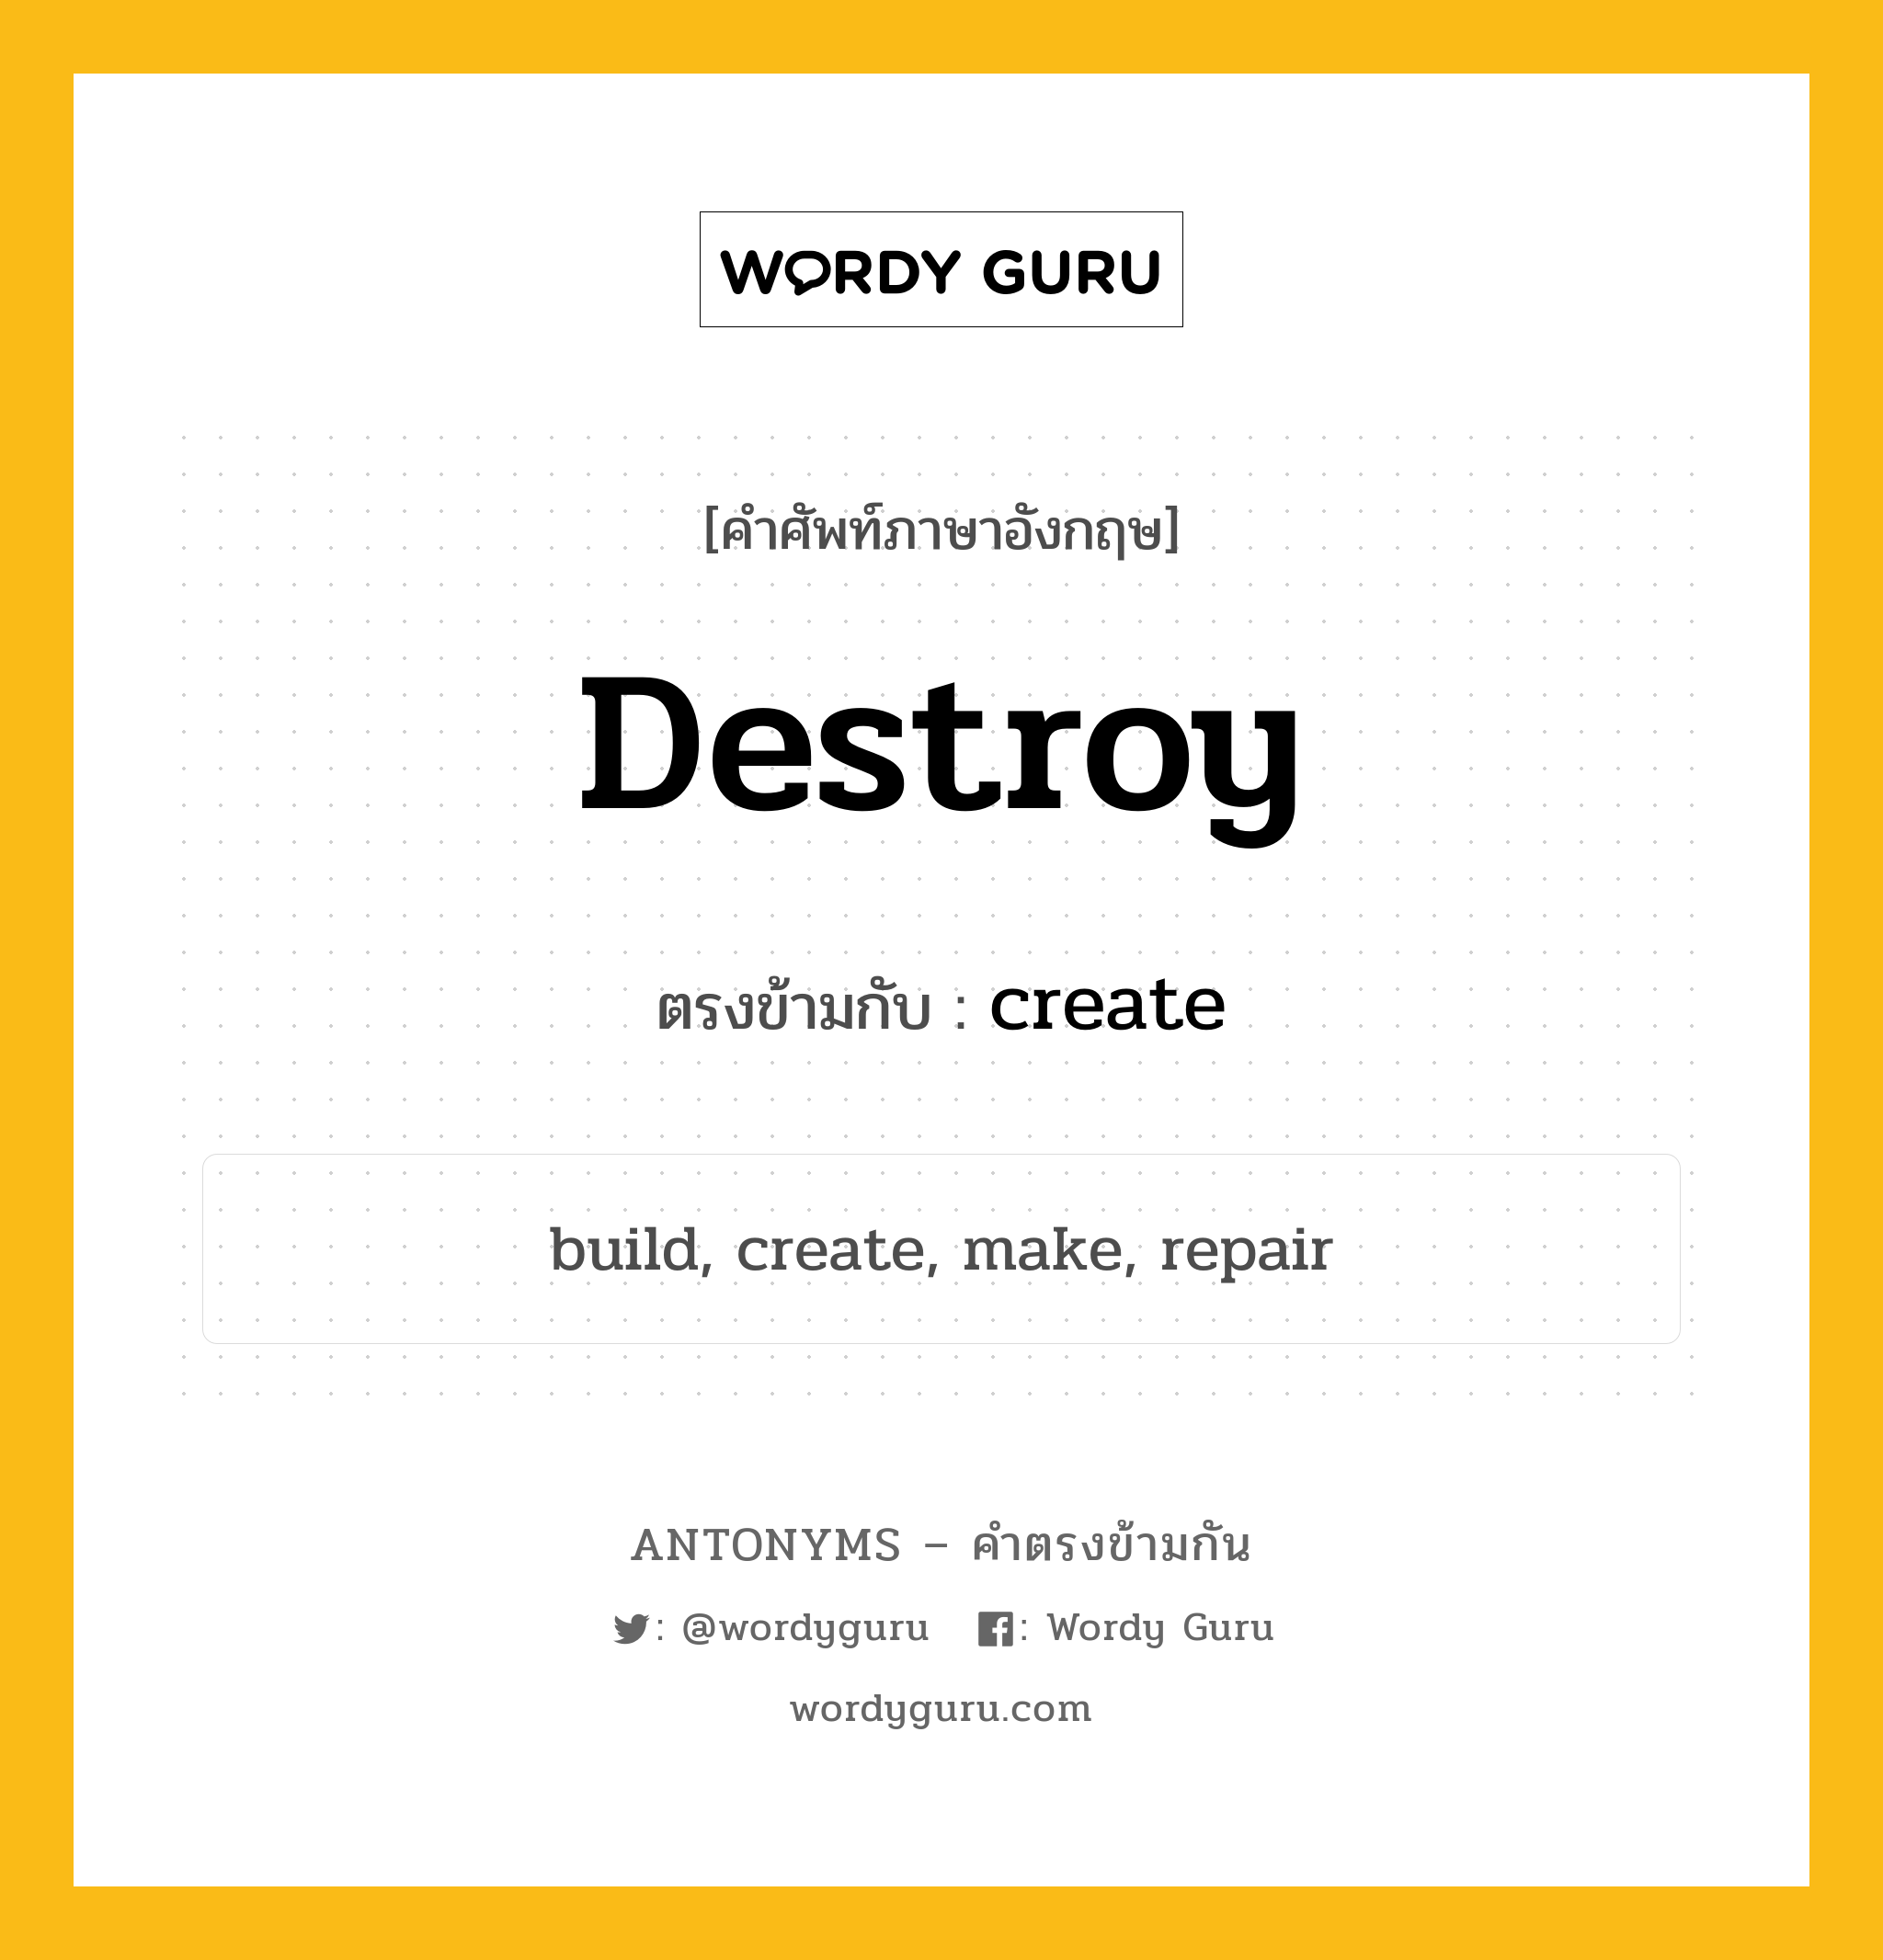 destroy เป็นคำตรงข้ามกับคำไหนบ้าง?, คำศัพท์ภาษาอังกฤษ destroy ตรงข้ามกับ create หมวด create